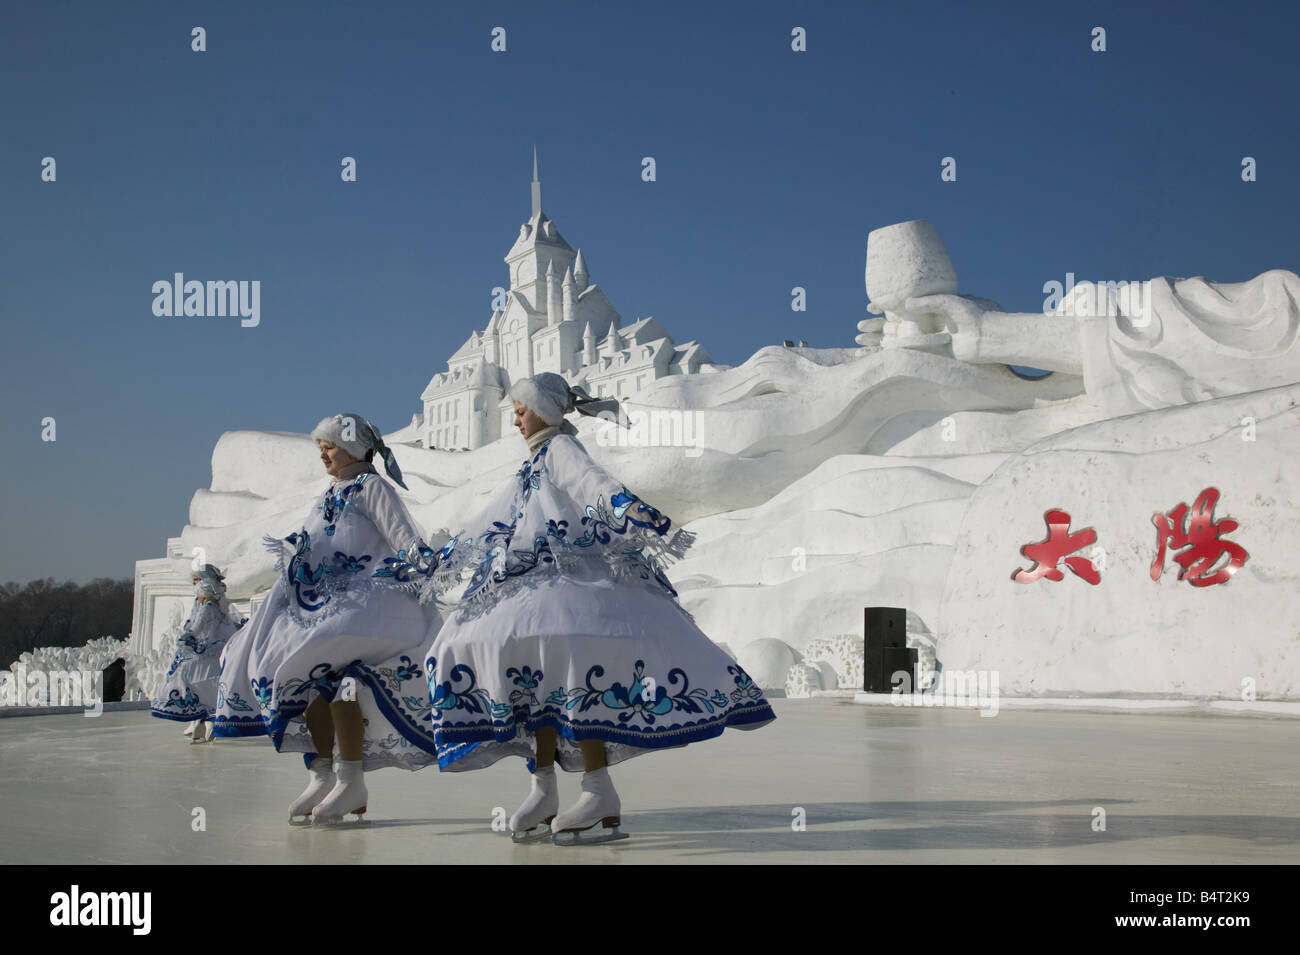 China, Heilongjiang, Harbin, Ice and Snow Festival, Ice Skating Show Stock Photo